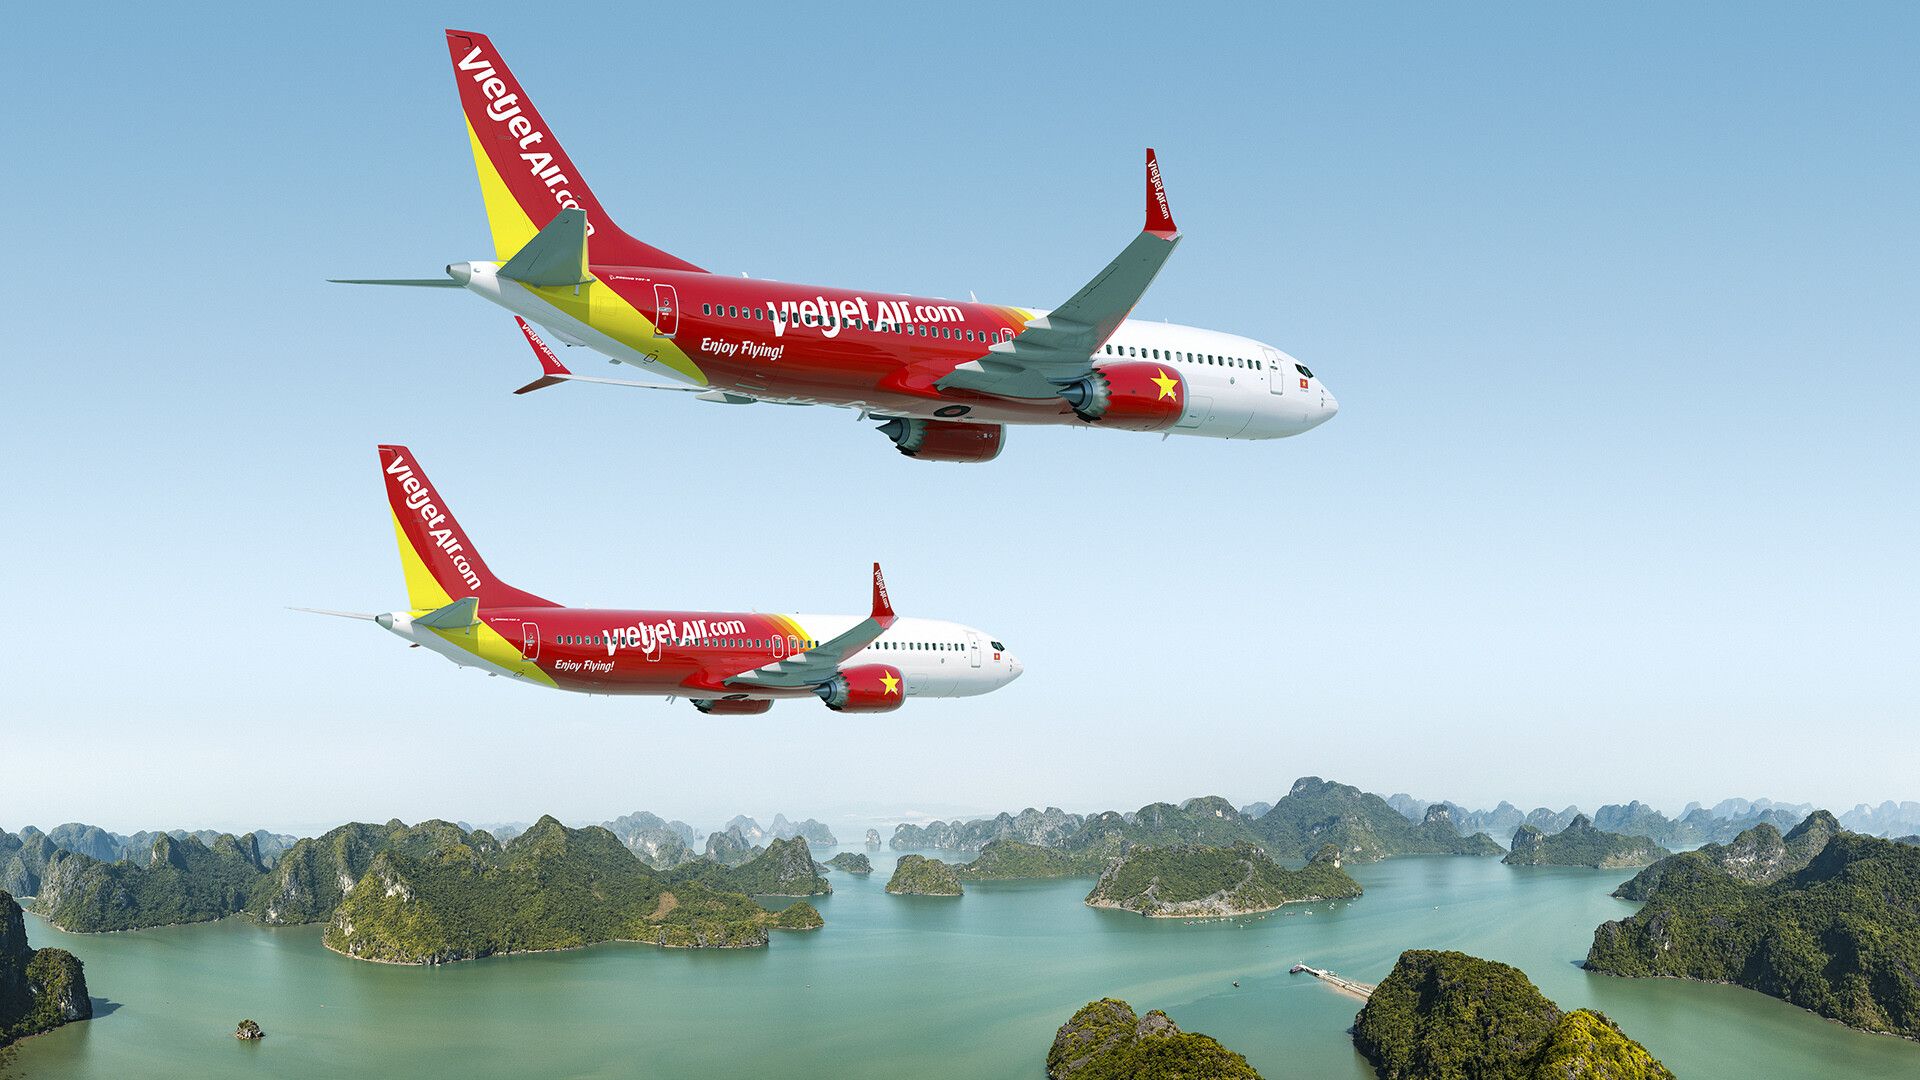 เวียตเจ็ทและโบอิ้งยืนยันคำสั่งซื้อเครื่องบิน 200 ลำ เสริมกลยุทธ์ขยายเครือข่ายเส้นทางบินทั่วโลก